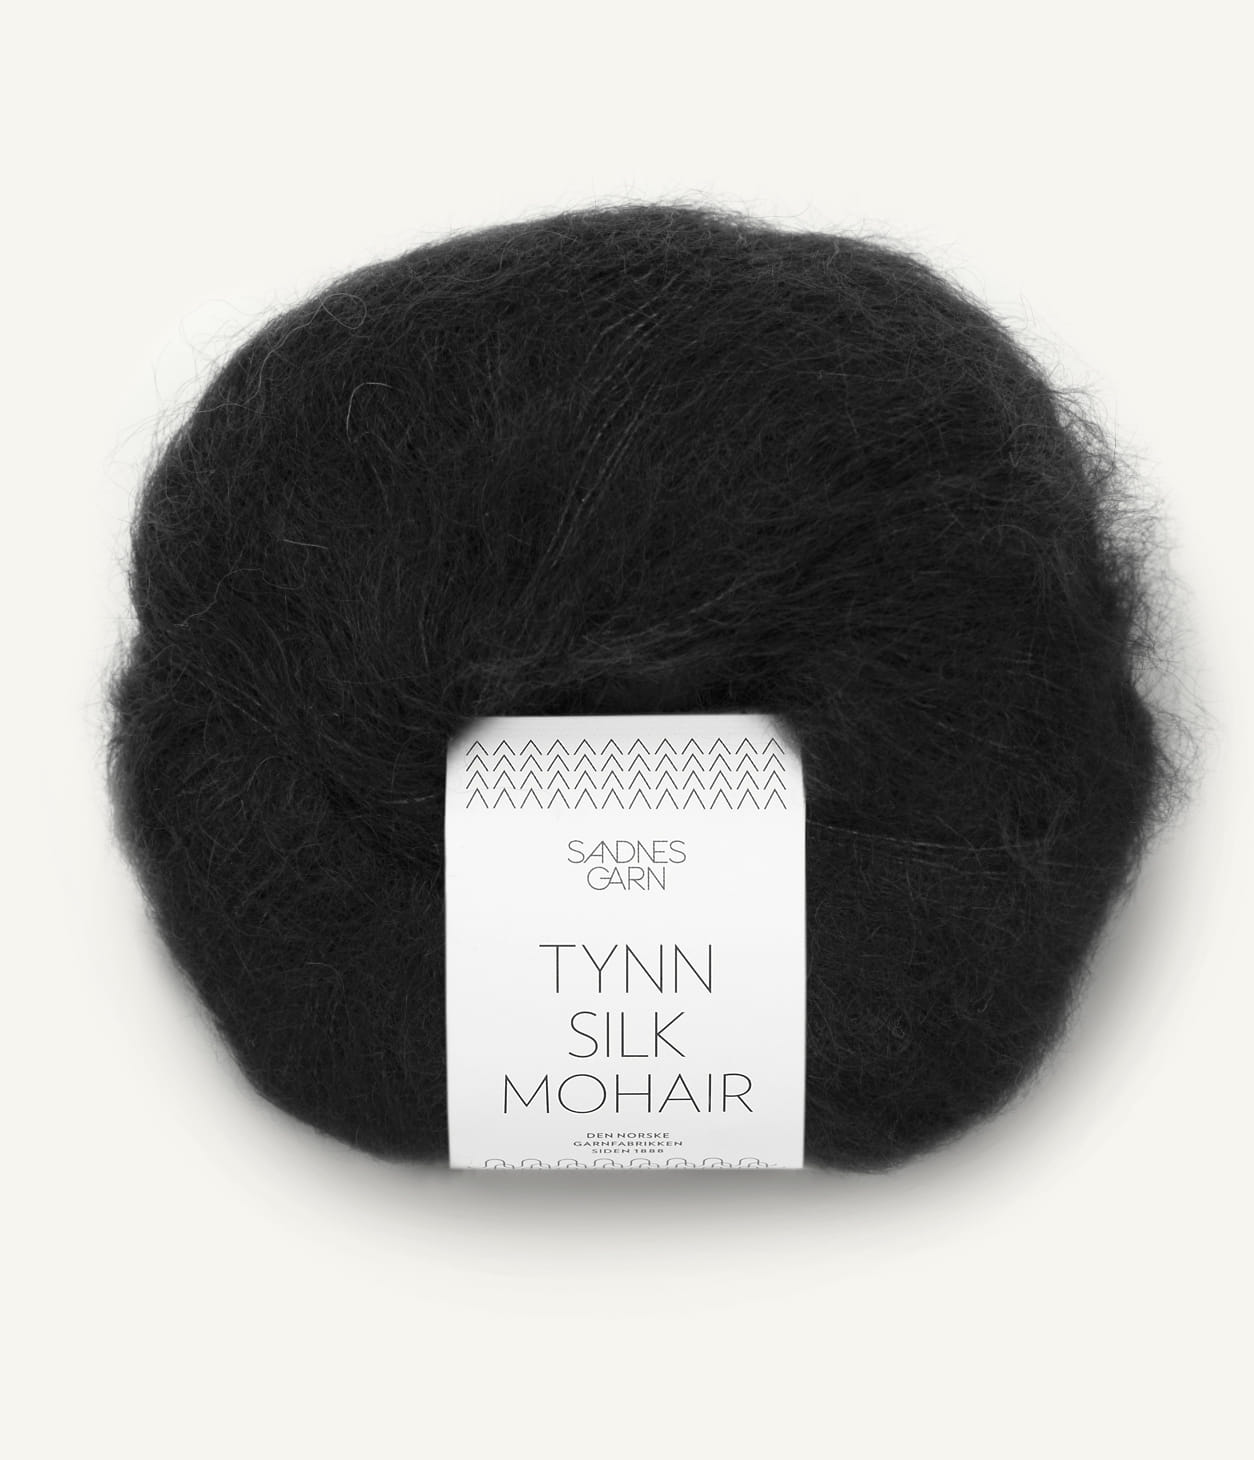 Kuvassa on Sandnes Garn Tynn Silk Mohair -lanka (yarn) värissä Svart.